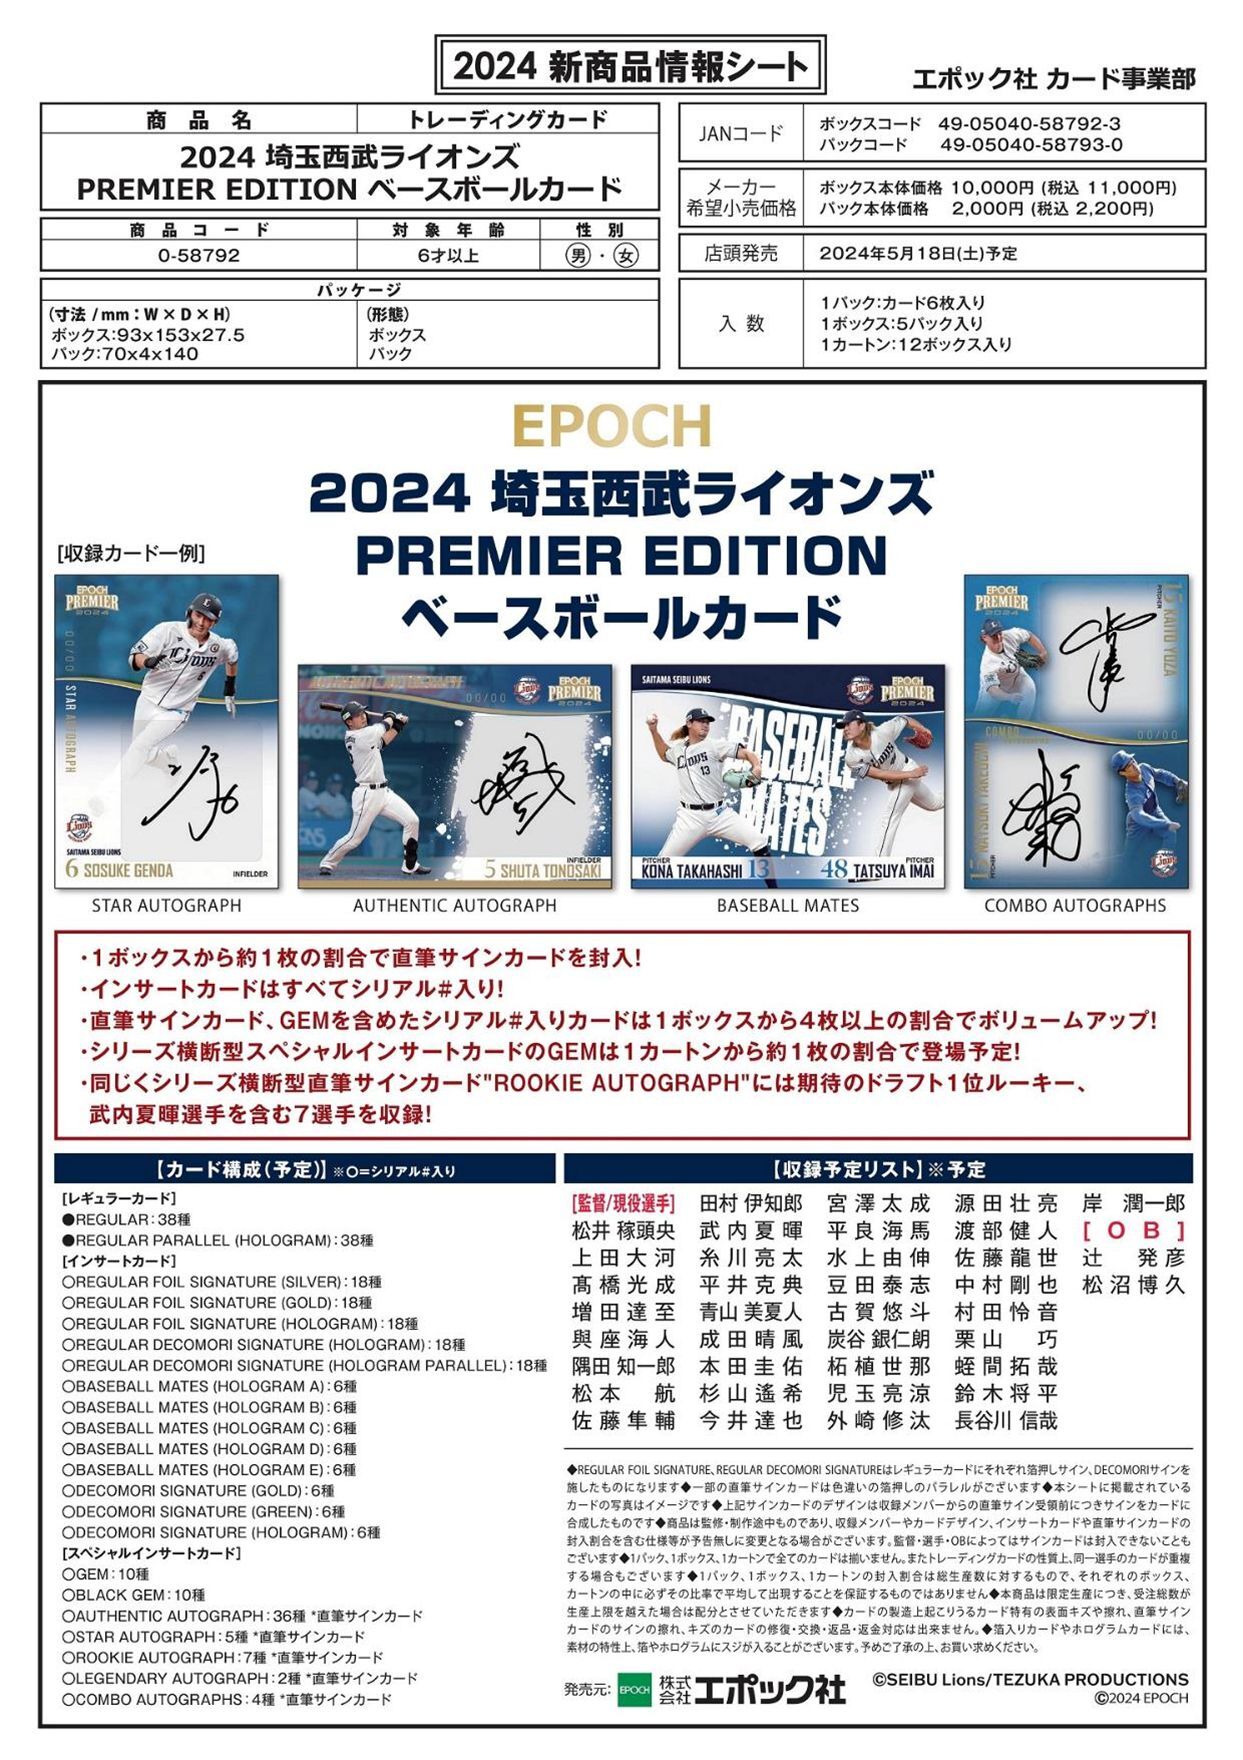 2021 EPOCH 西武ライオンズ Starsu0026Legends 未開封BOX - トレーディングカード